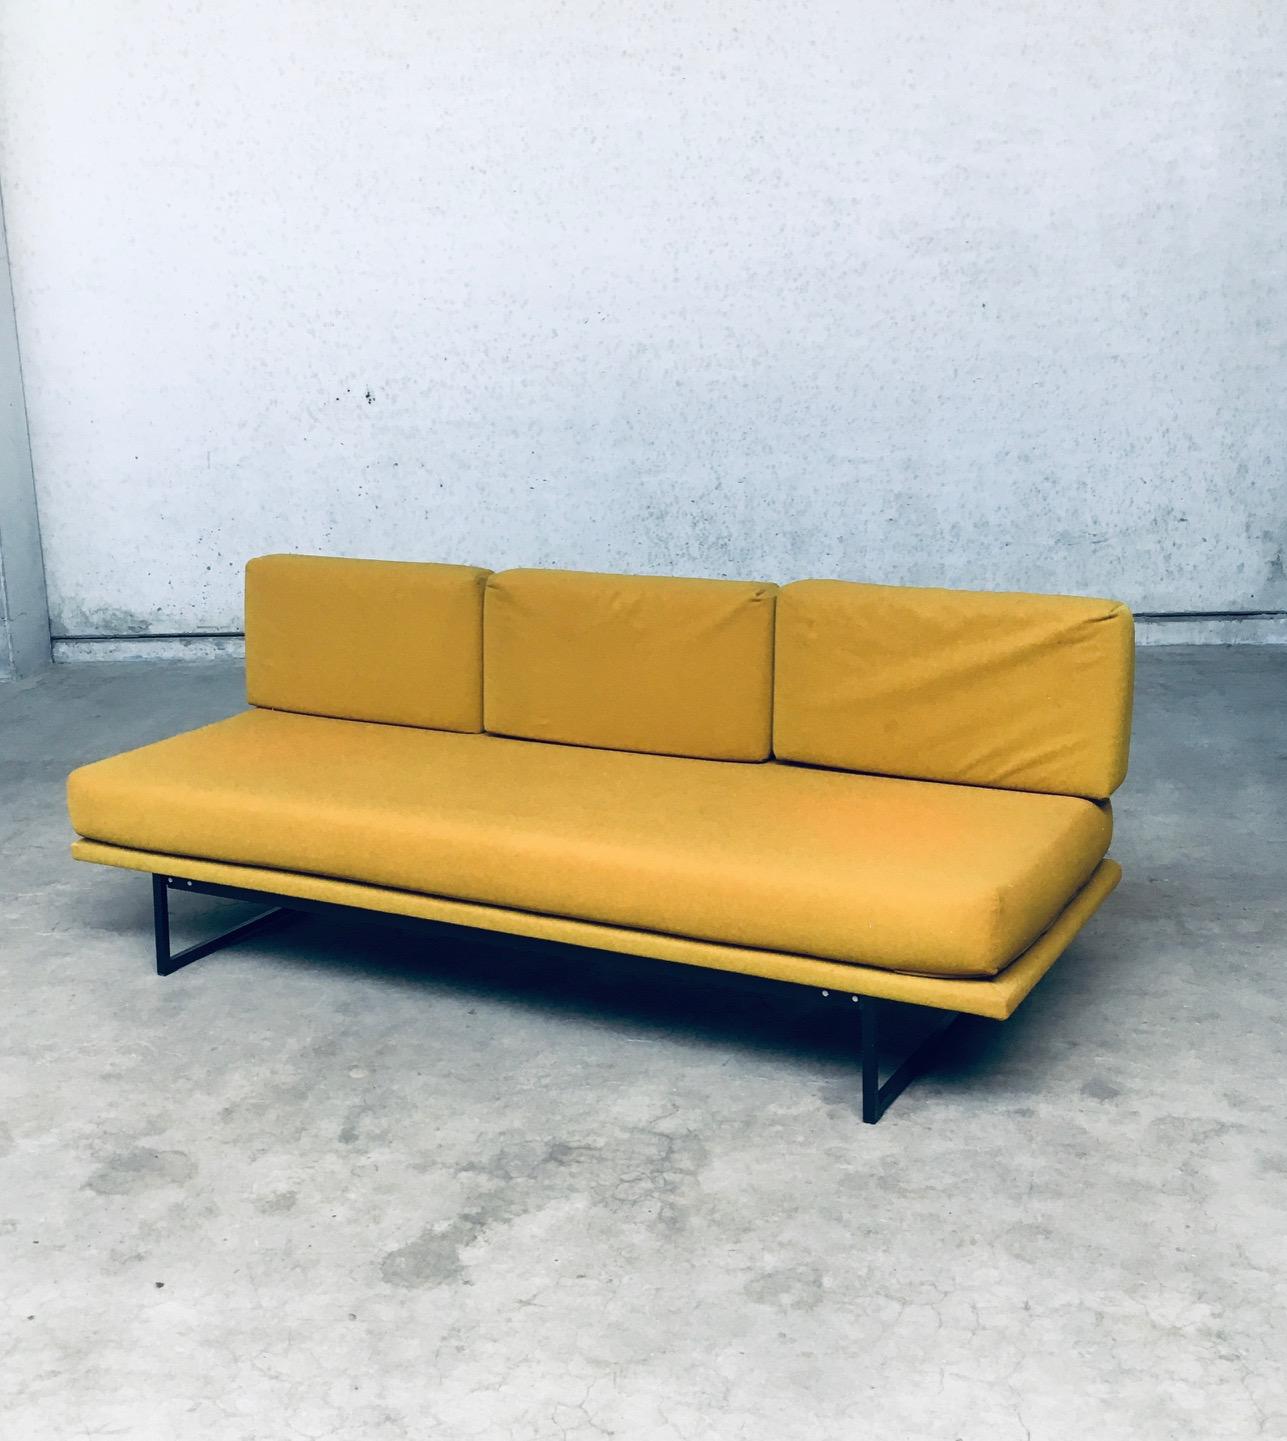 Vintage Midcentury Modern Dutch Design 3 Seat Sofa Bench, fabriqué aux Pays-Bas dans les années 1960. Design minimaliste sur ce canapé ou banc bas. Tous les coussins et revêtements d'origine sont de couleur jaune ocre et sont montés sur un cadre en